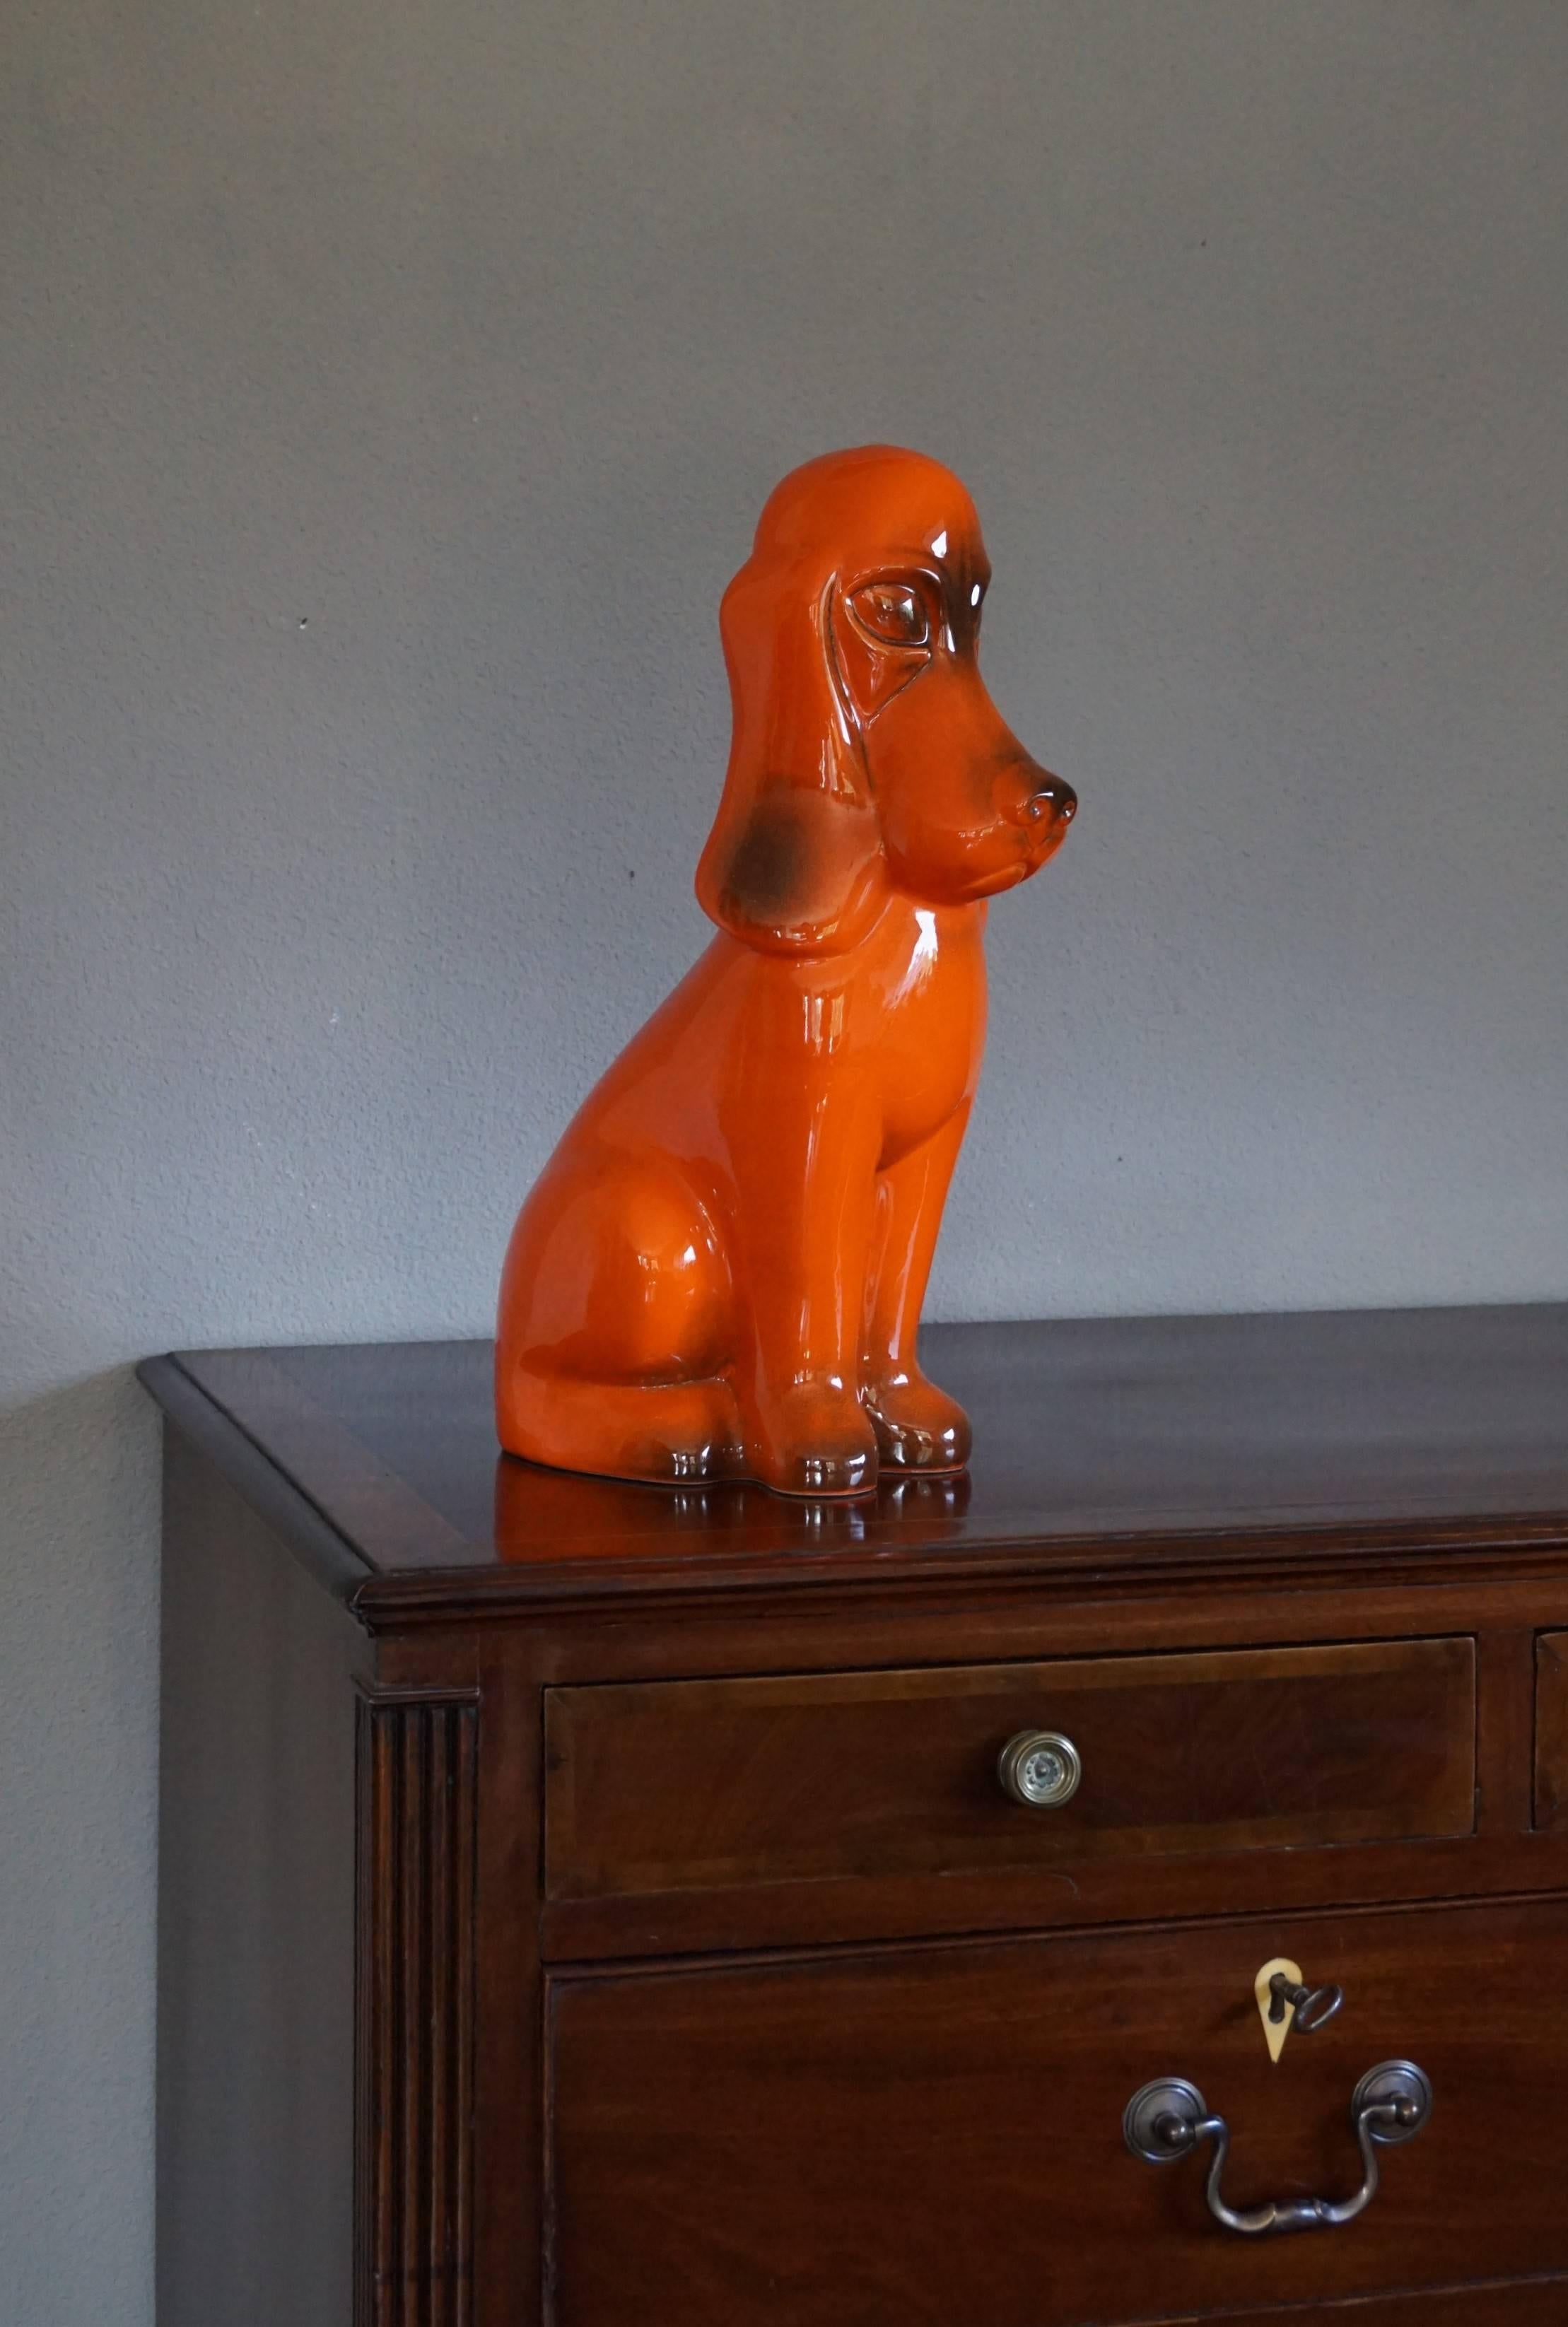 Sehr seltene, große und wirklich dekorative Basset-Skulptur.

Manche mögen diese künstlerische Hundeskulptur als naiv bezeichnen, aber genau das ist oft das Geheimnis wahrer Künstler. Ohne viele Details sind sie in der Lage, zeitlose Designs zu